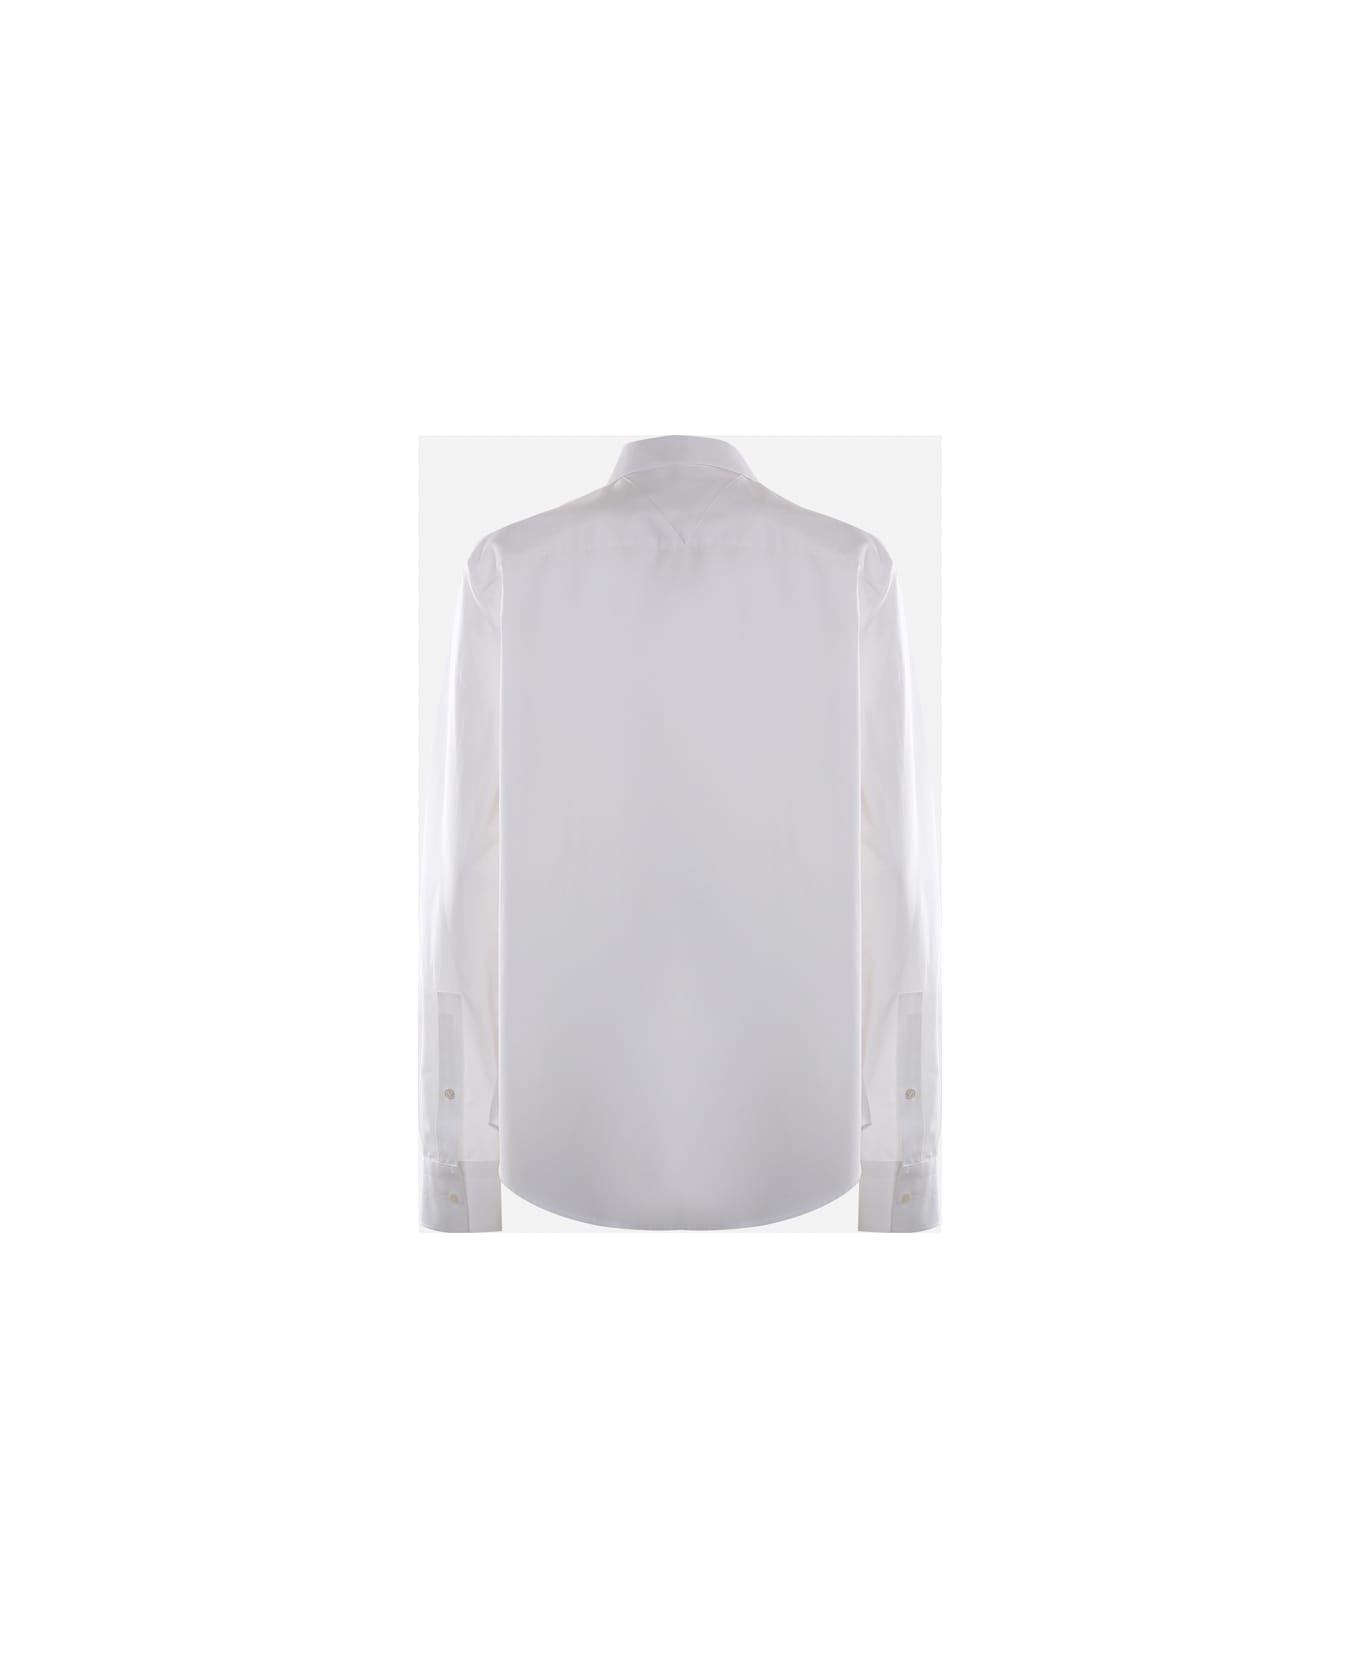 Bottega Veneta Basic Shirt Made Of Cotton - White シャツ